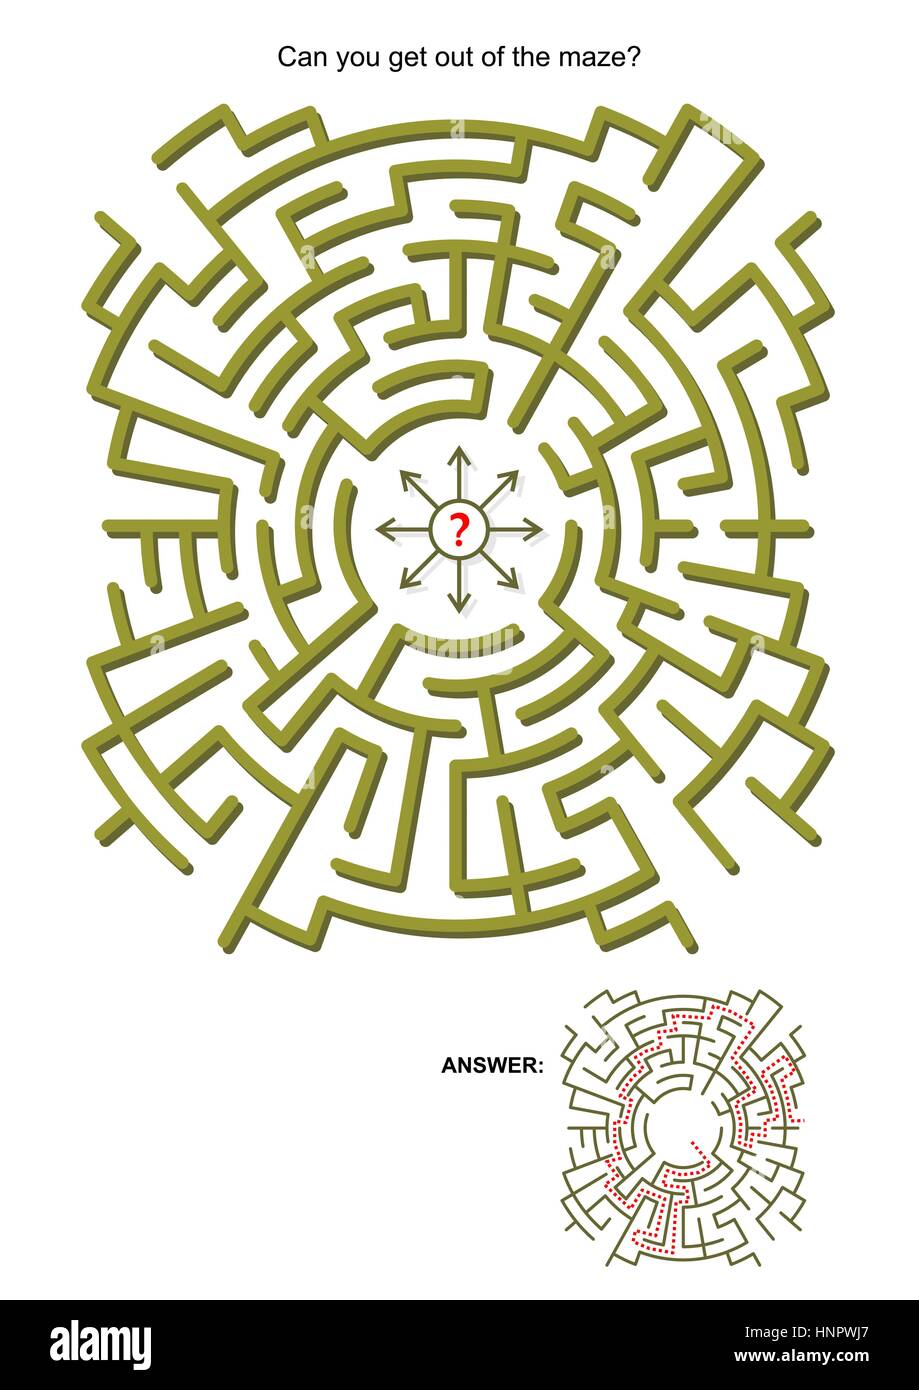 Gioco labirinto per bambini o adulti: potete uscire dal labirinto? Le risposte sono inclusi. Illustrazione Vettoriale